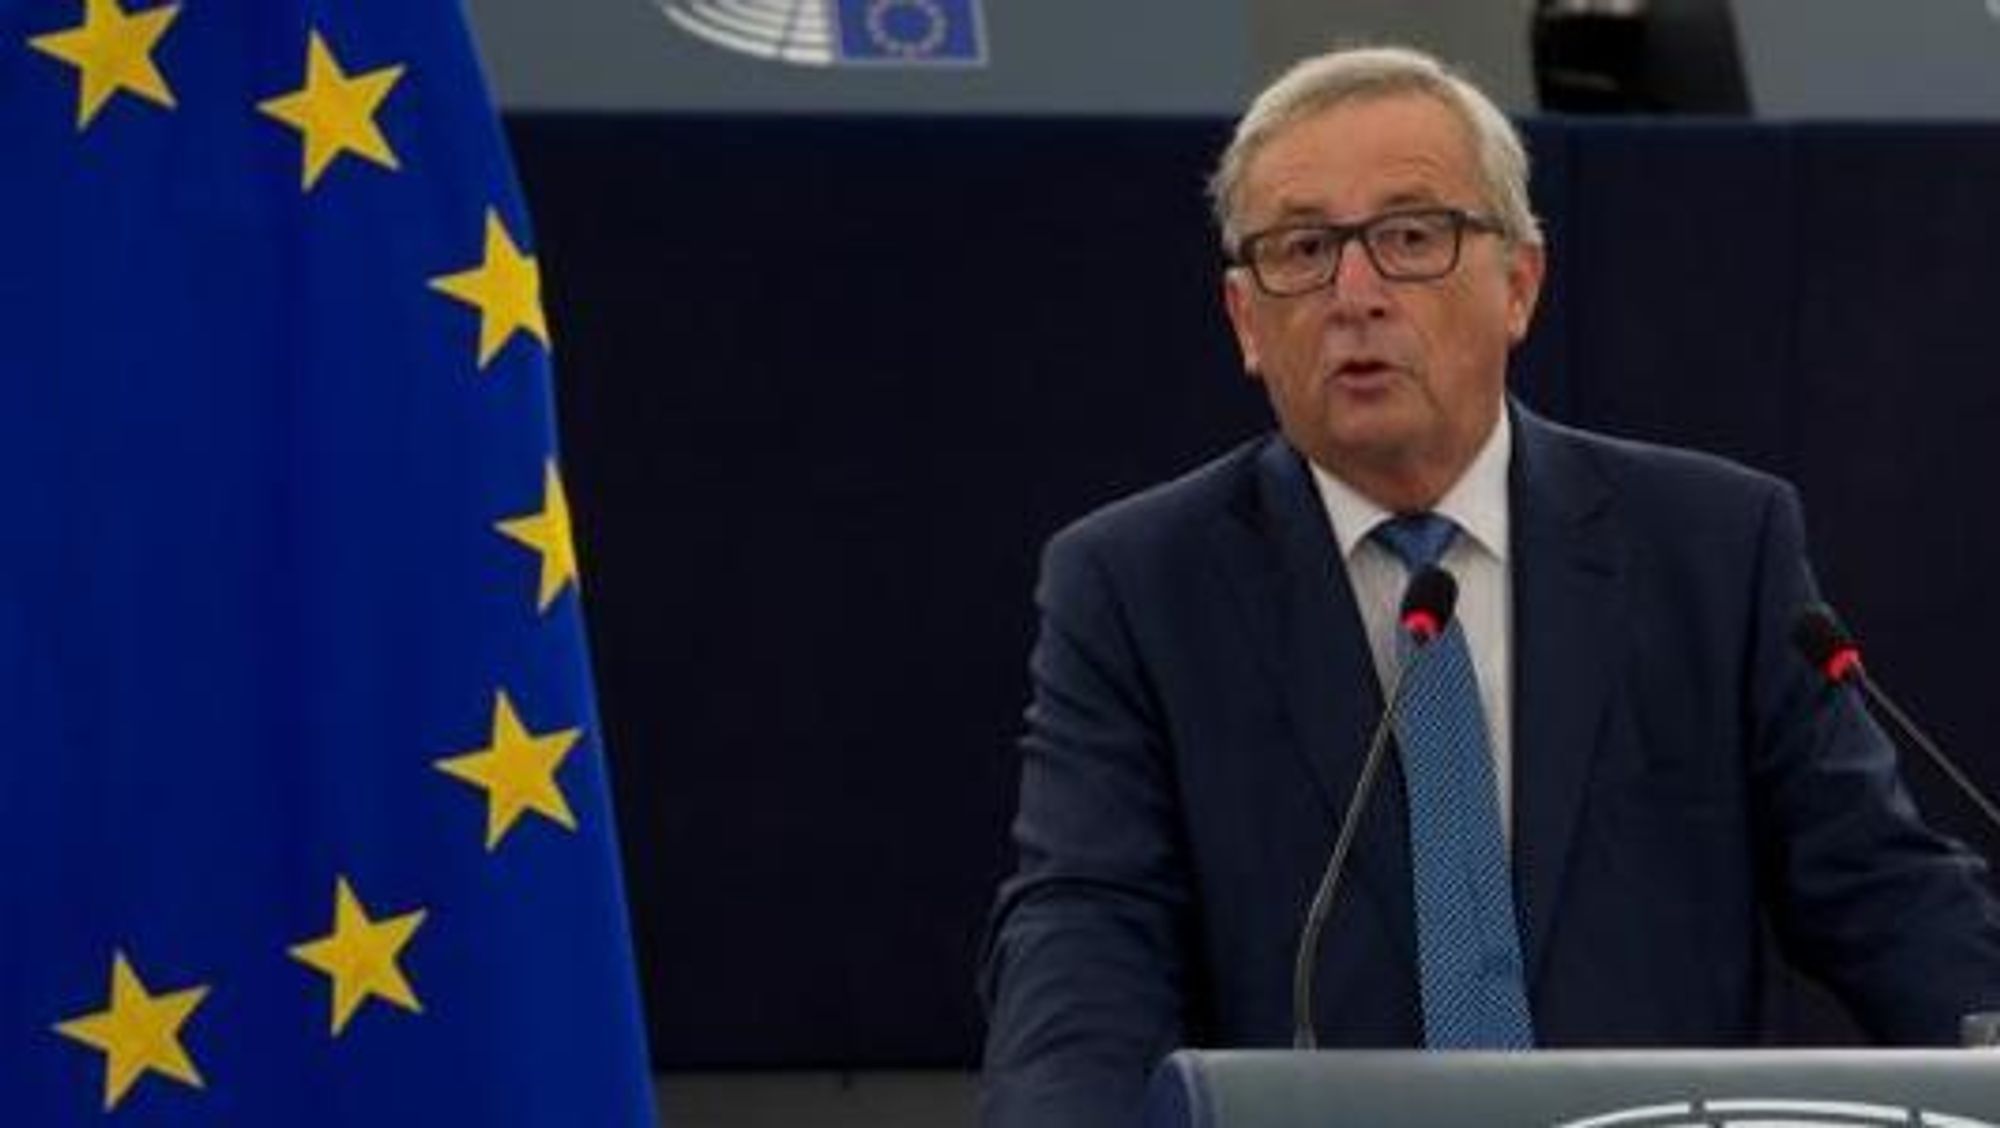 EU-kommisjonens president, Jean-Claude Juncker, vil ha et fremtidseuropa som utnytter effektivitetspotensialiet som ligger i digital teknologi og raske nett.